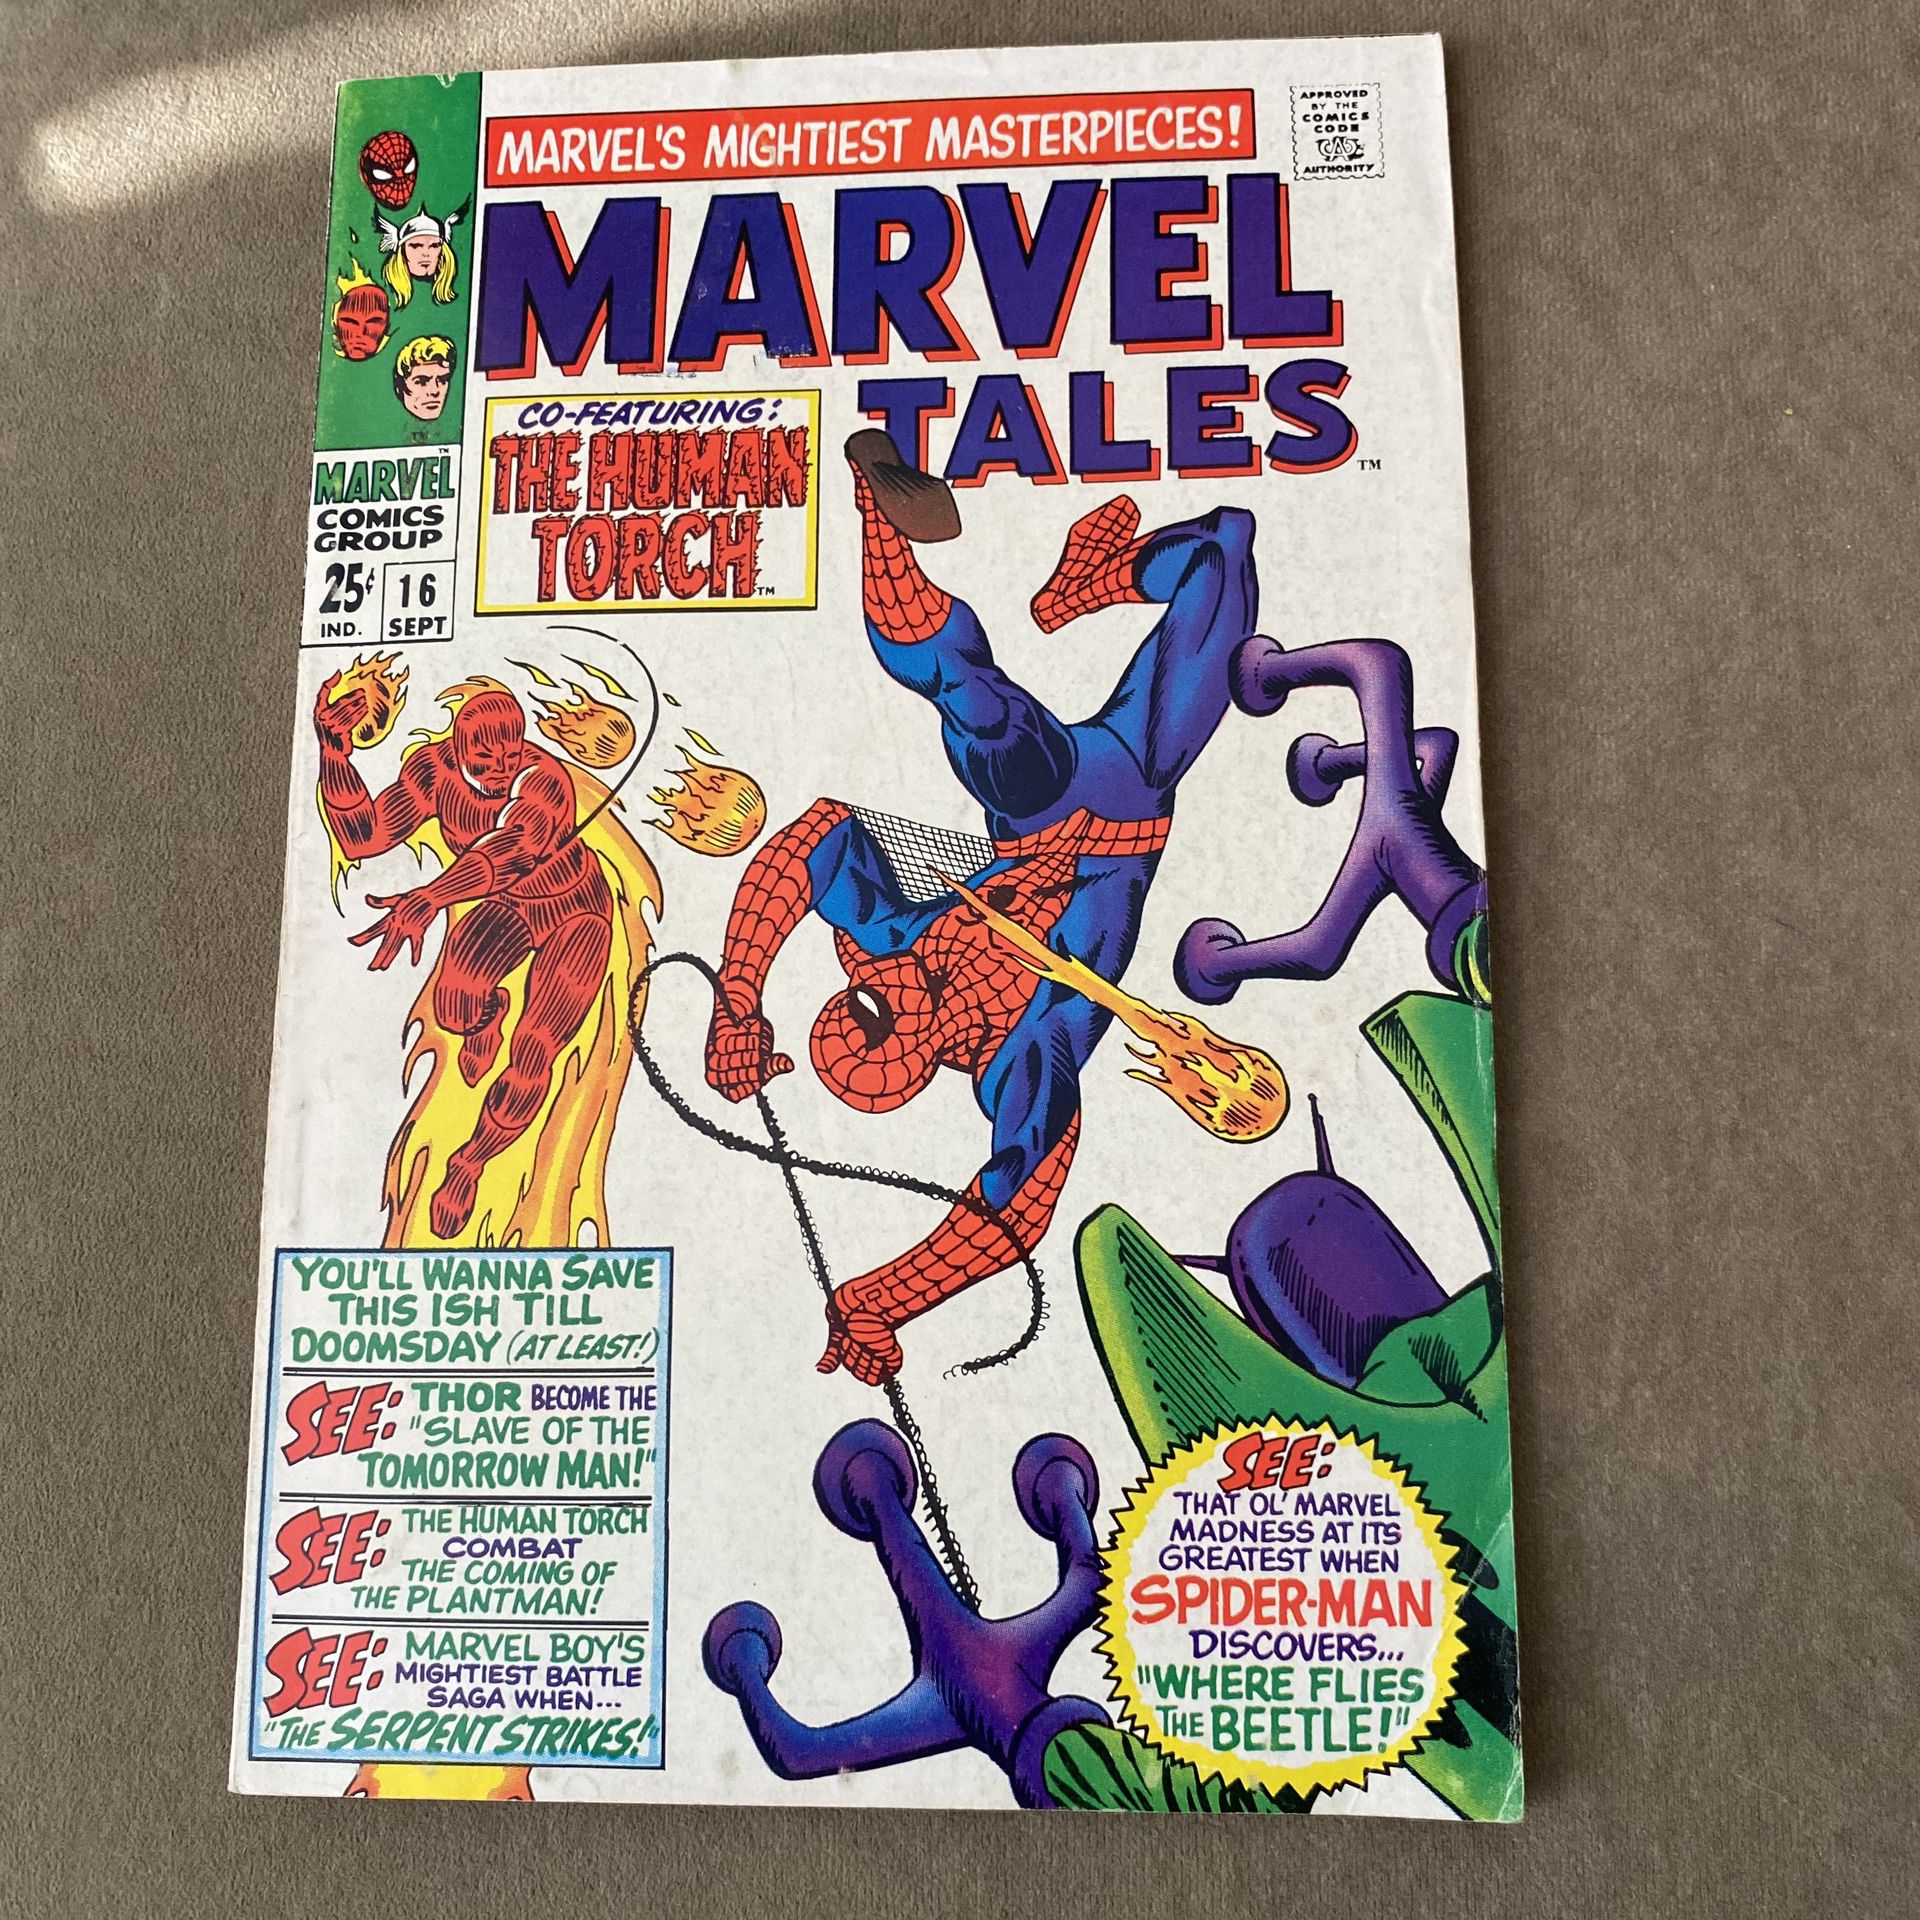 Marvel Tales #16